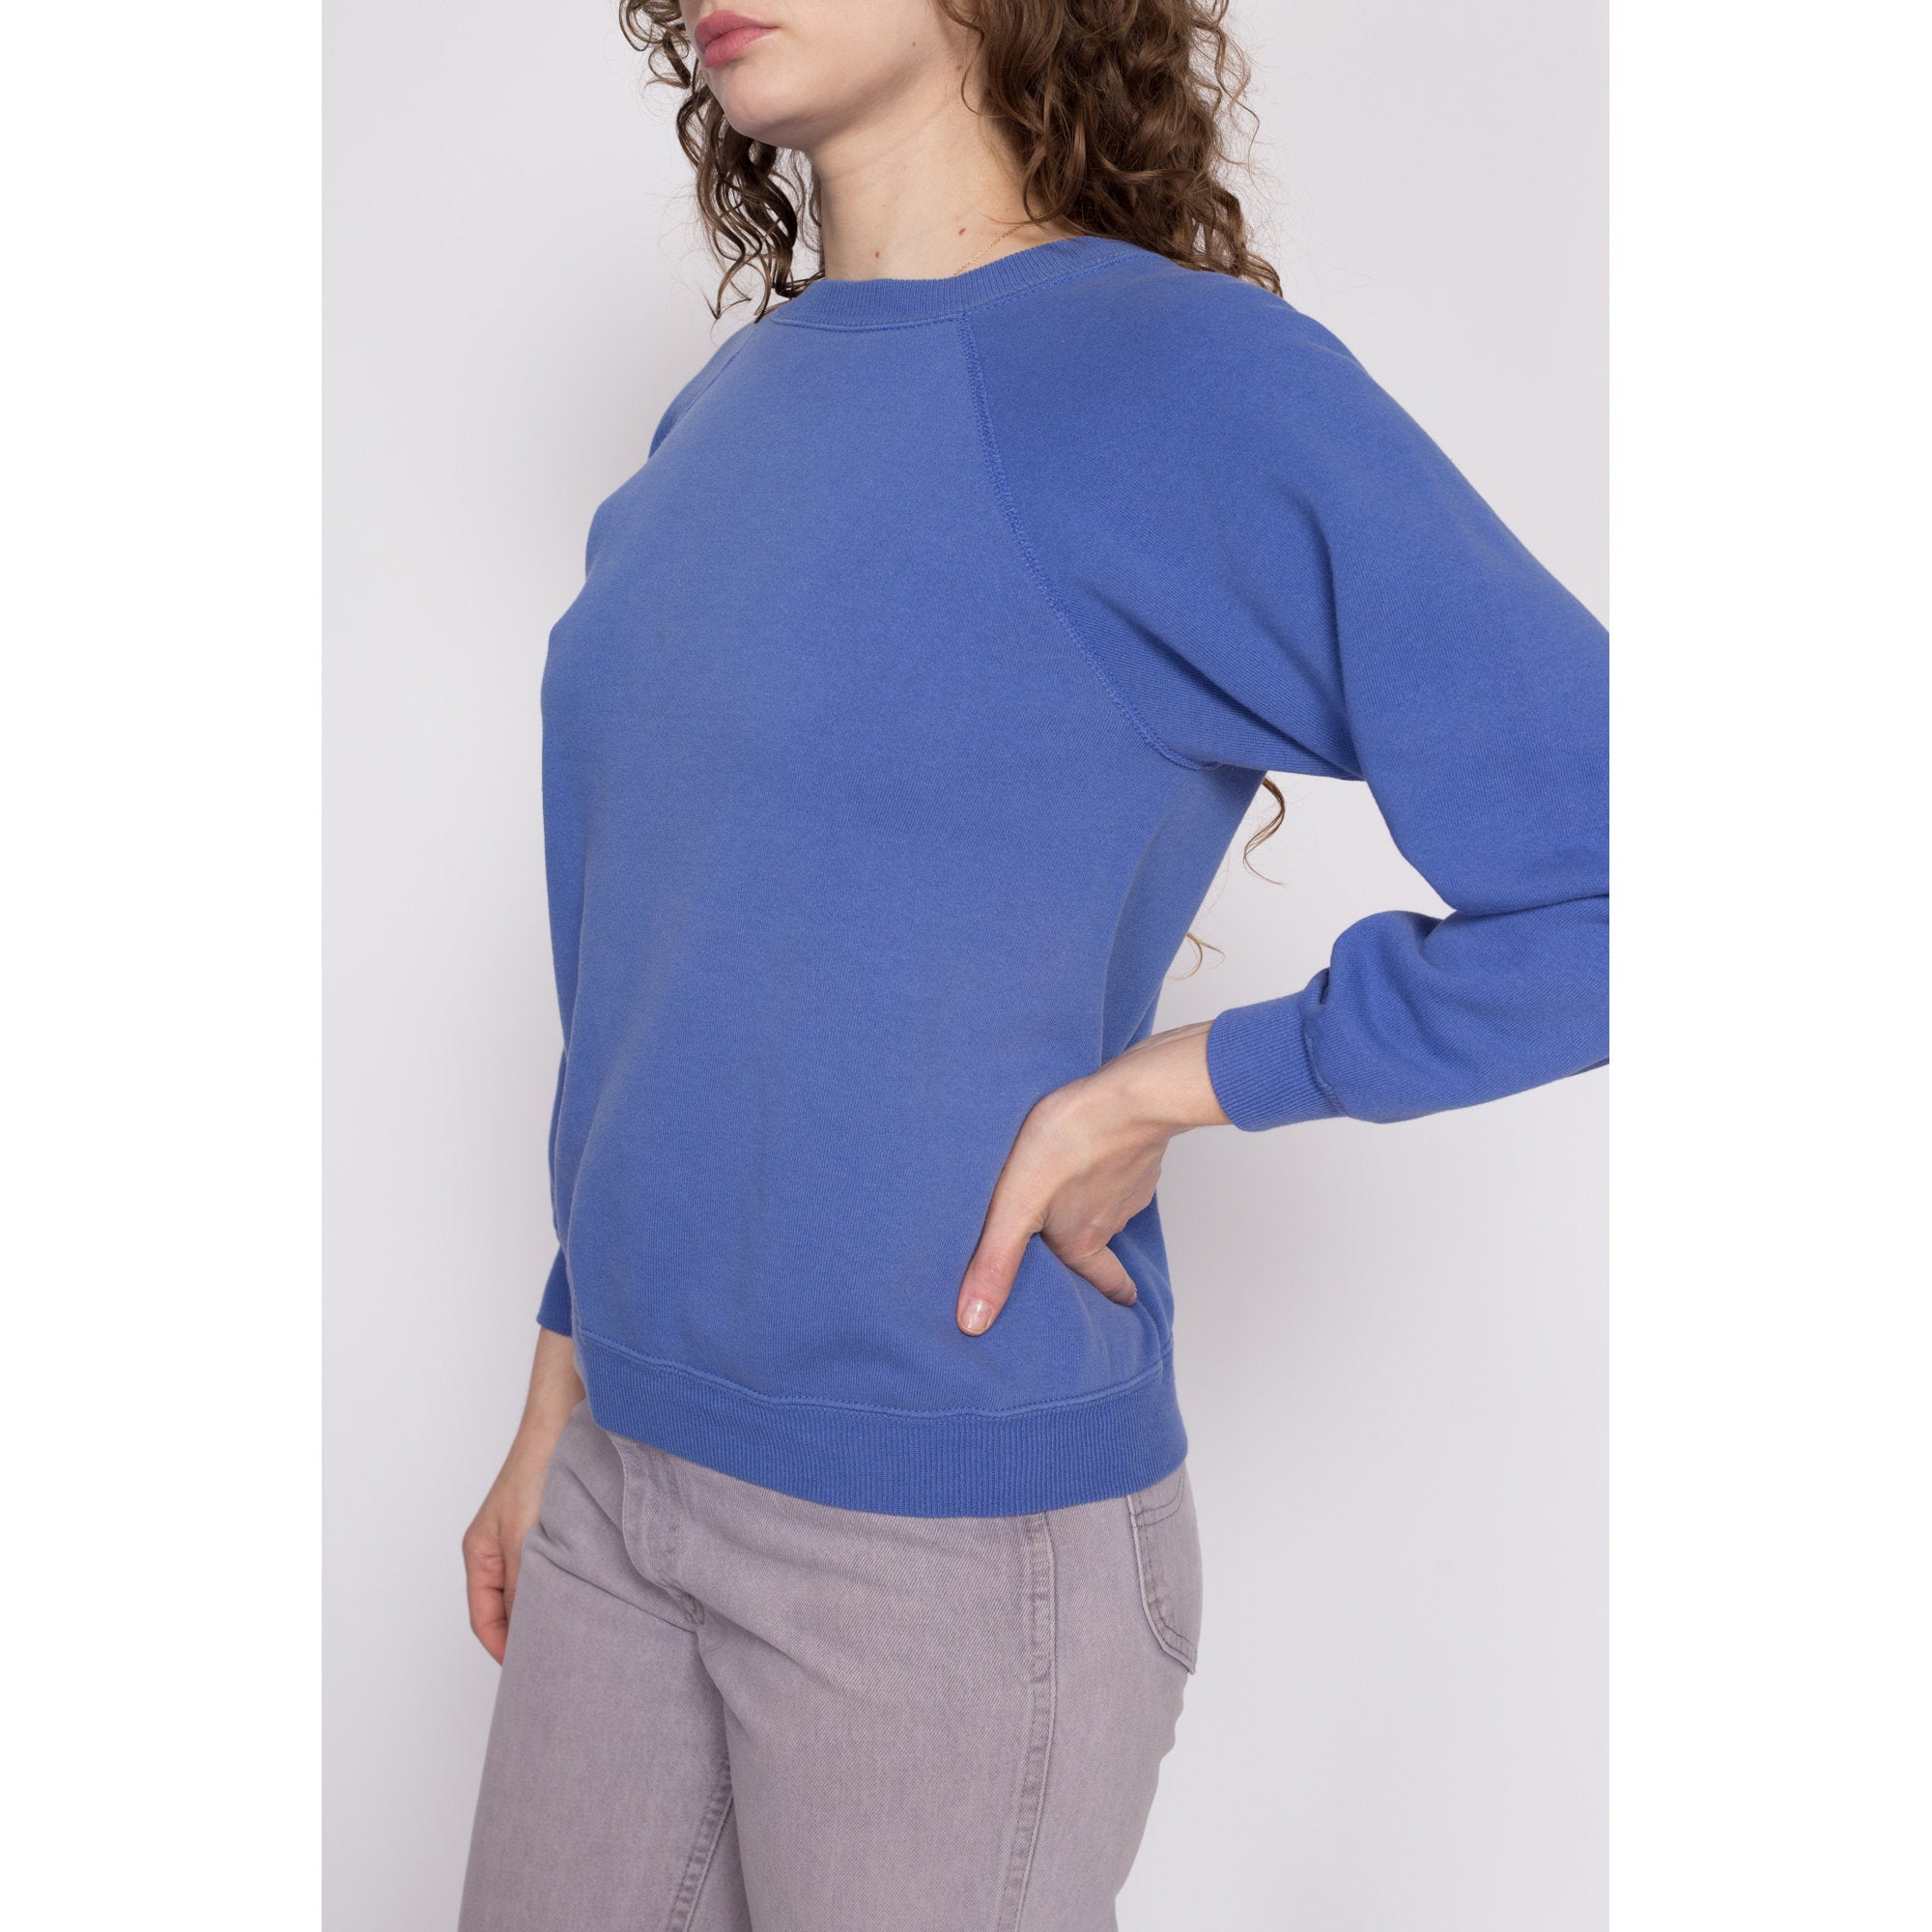 90s Periwinkle Raglan Sleeve Sweatshirt - Medium – Flying Apple